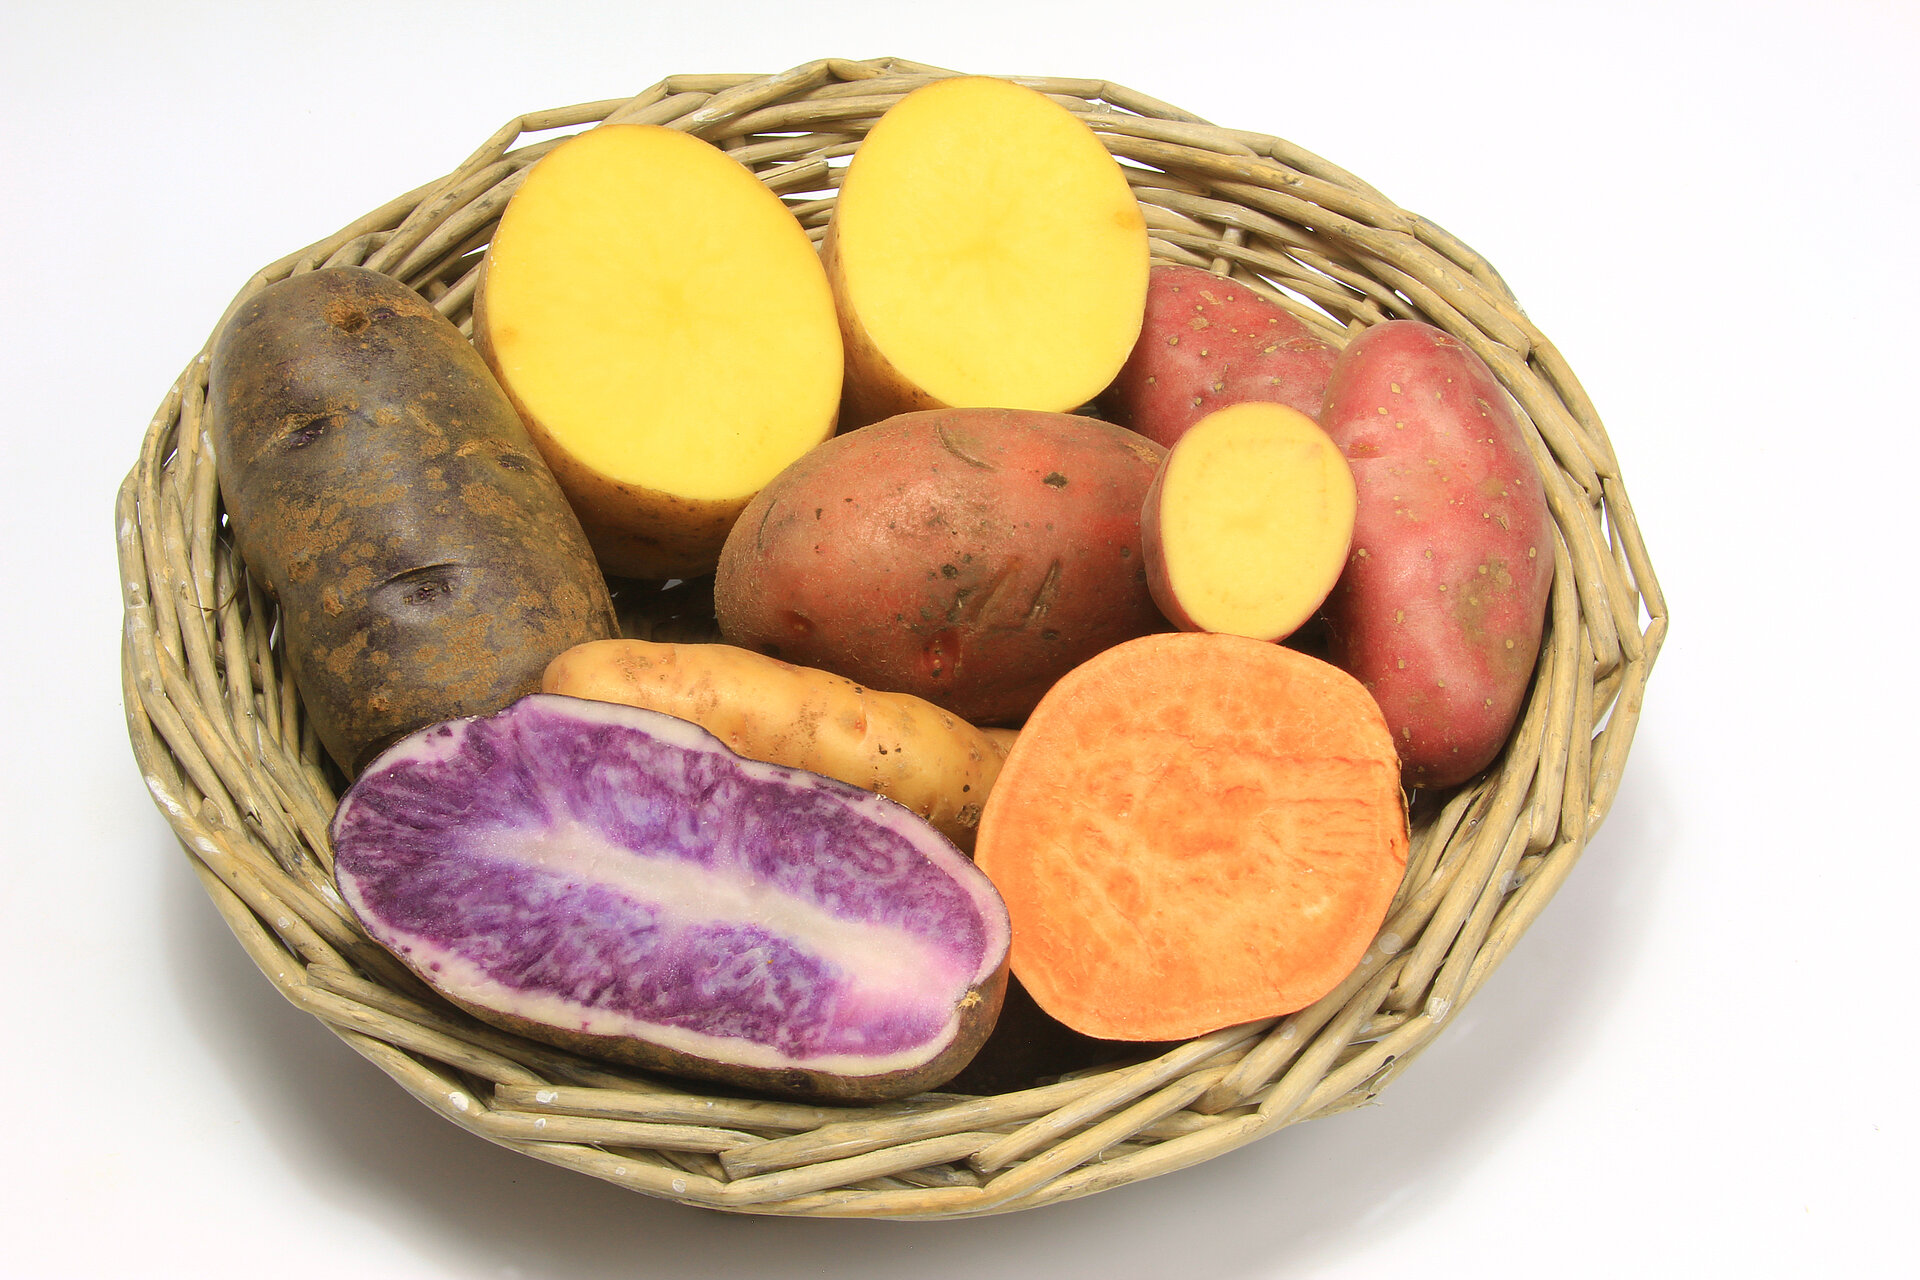 Waar of Niet waar: Zoete aardappel kun je rauw eten